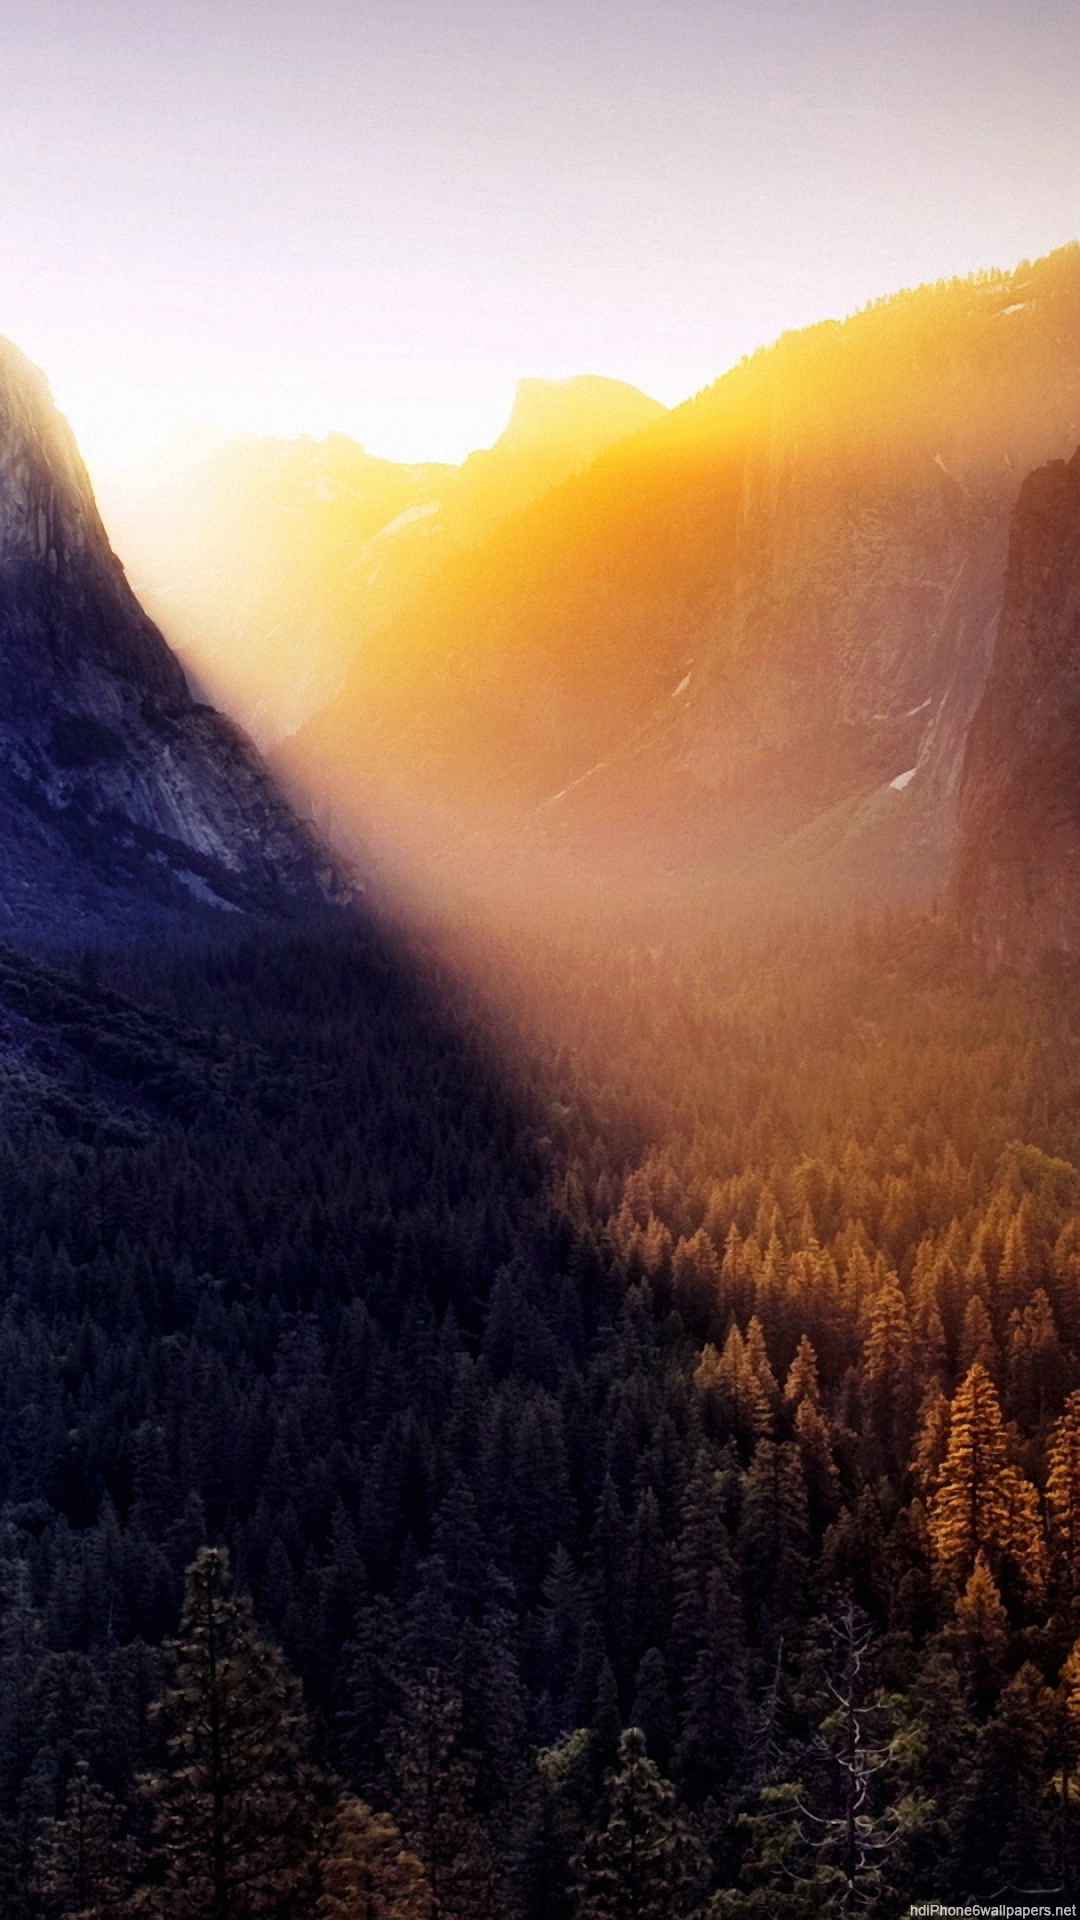 Iphone 6 Plus 1080p Wallpaper - Yosemite National Park, Yosemite Valley - HD Wallpaper 